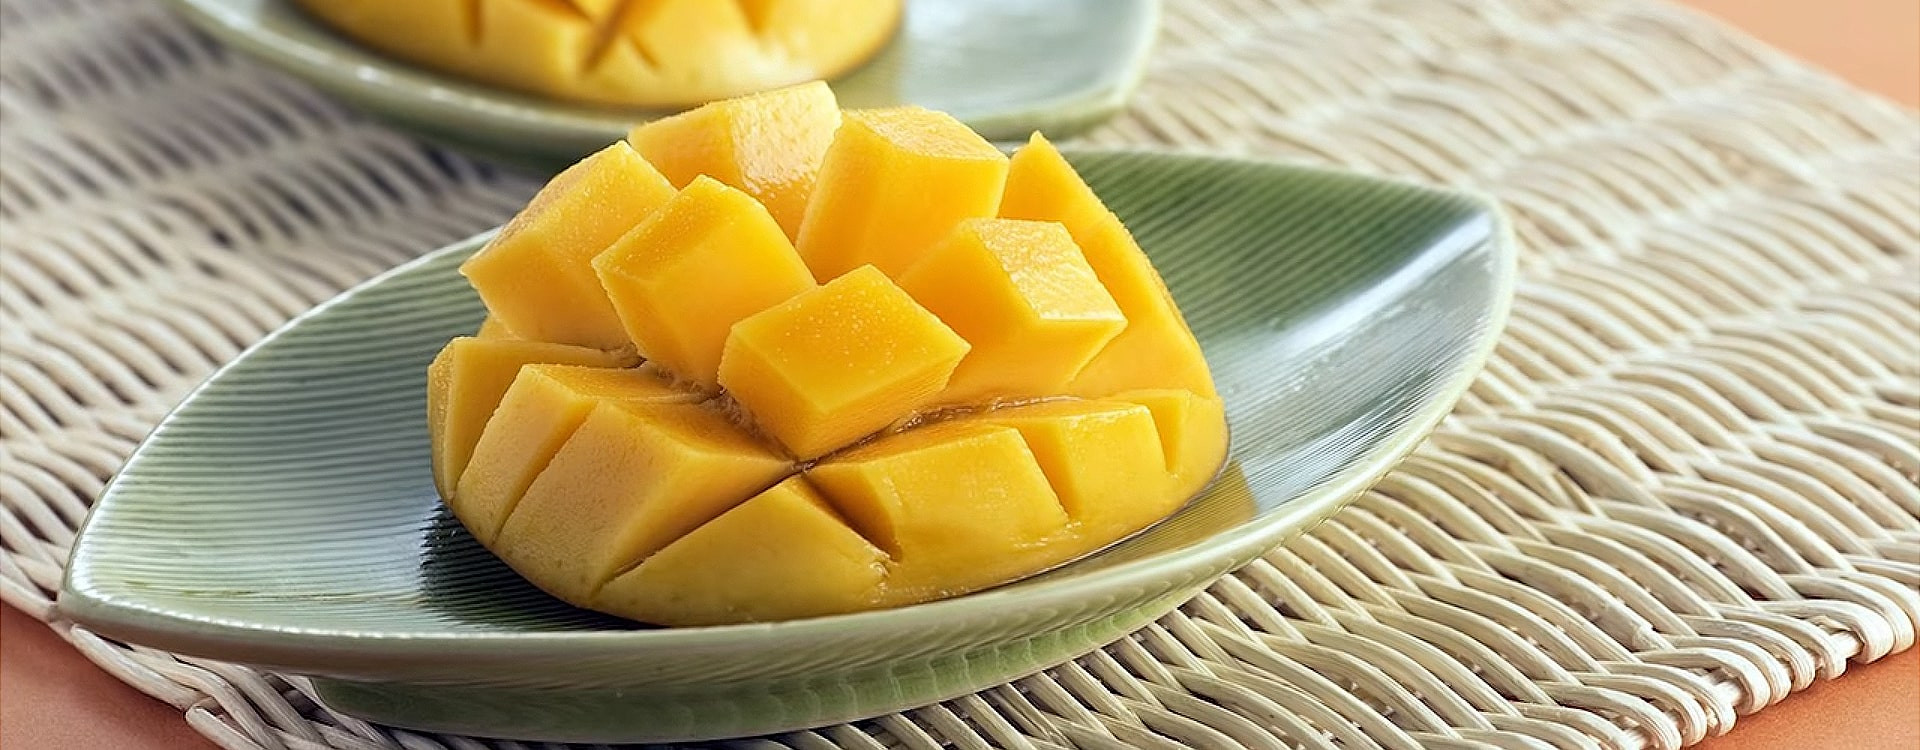 Coś na słodko, coś na słono: przepisy na zdrowe przekąski z mango